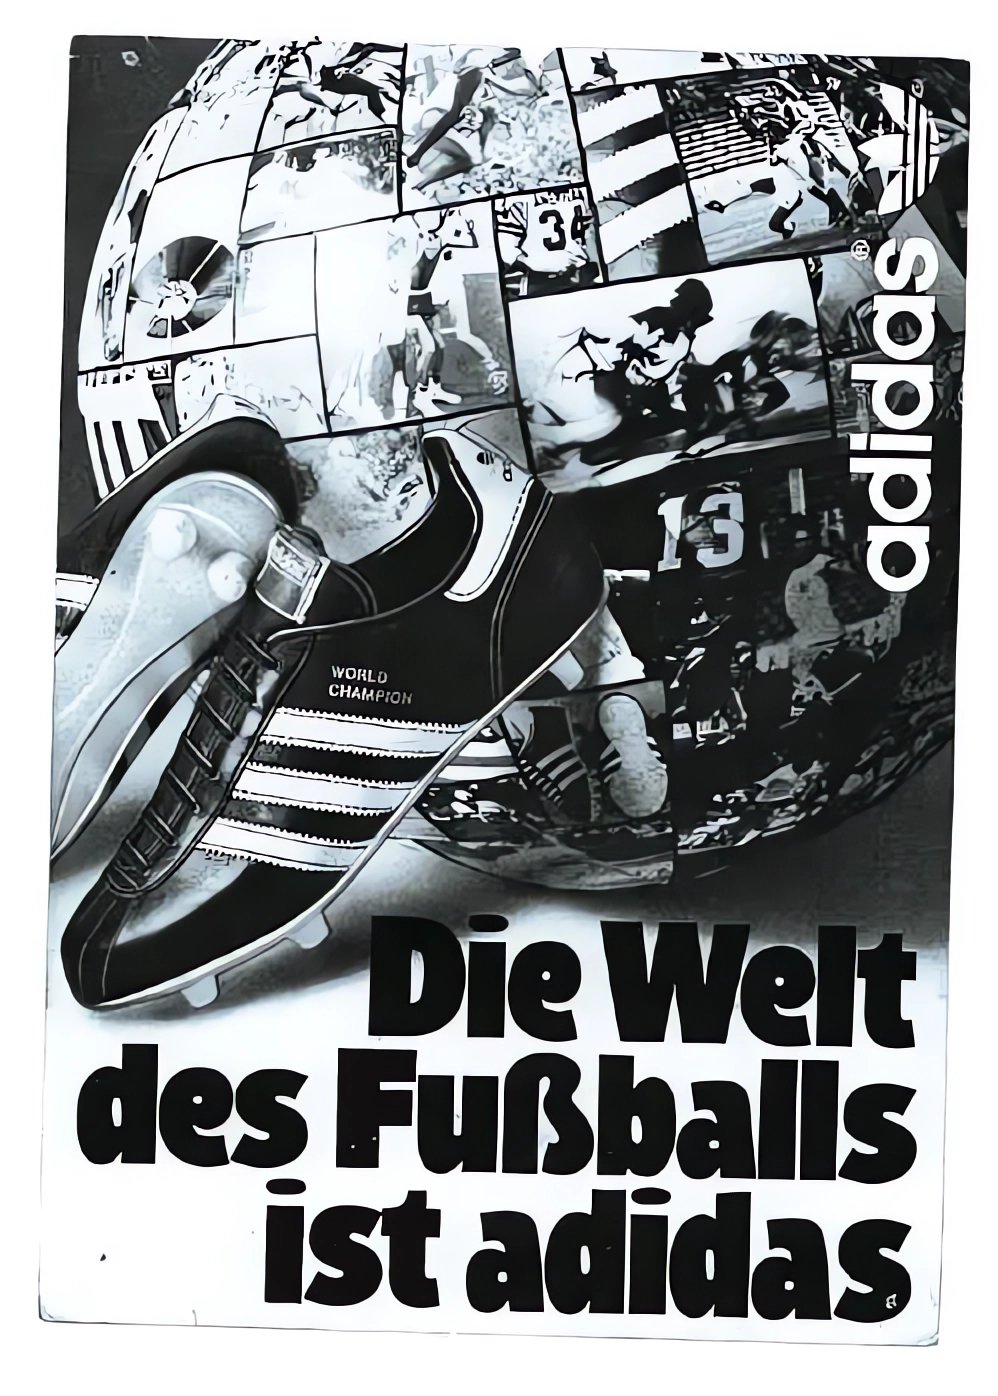 Fotografie "Die Welt des Fußballs ist adidas" (FCK-Museum Orphan Work)